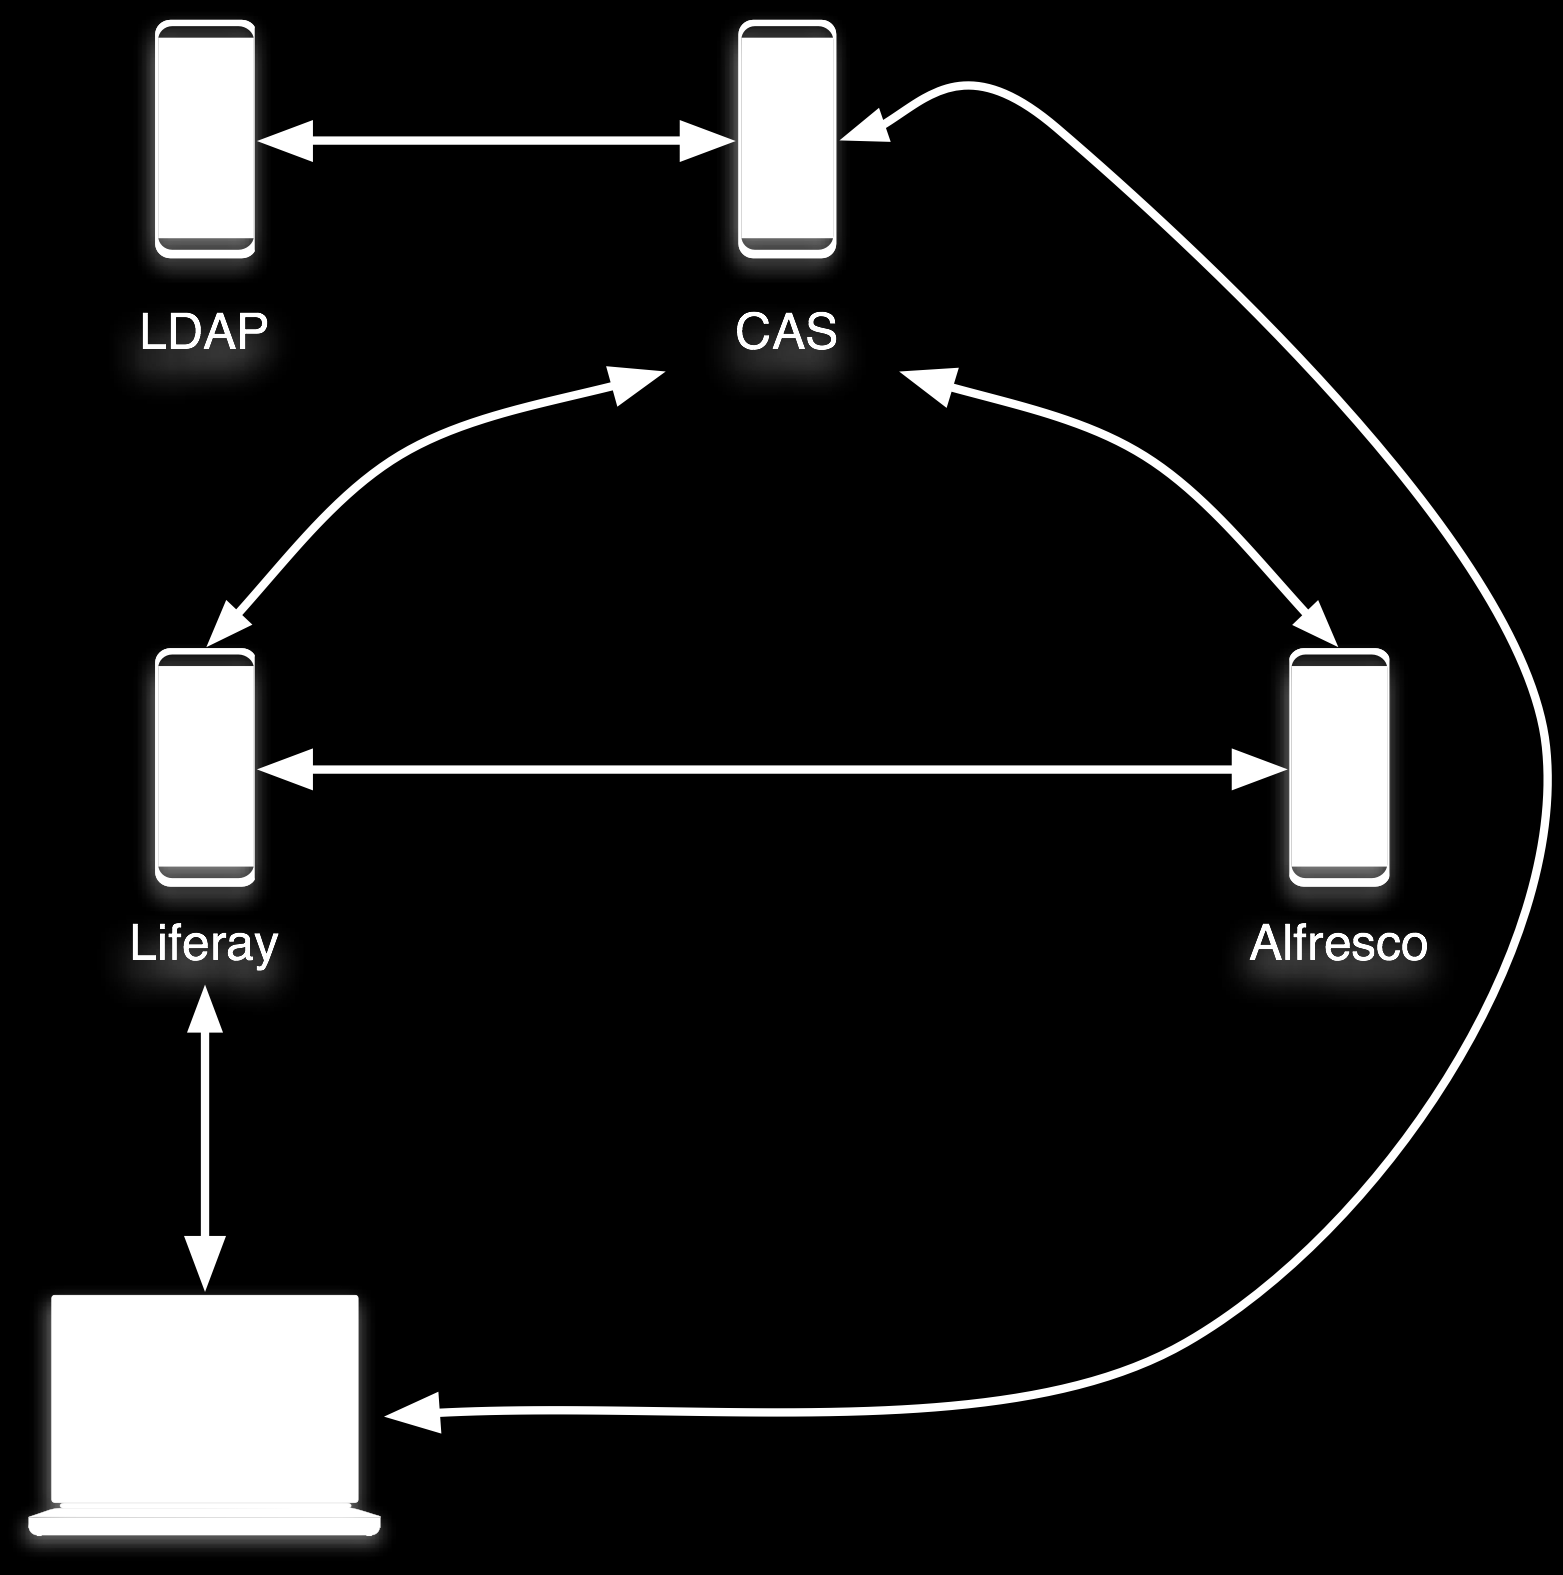 Integration mehrerer Systeme Lösung: CAS Lösung: Central Authentication Service (CAS) Das Liferay System leitet den User an den CAS Server weiter, wo er sich einmalig authentifiziert. Es wird ein sog.